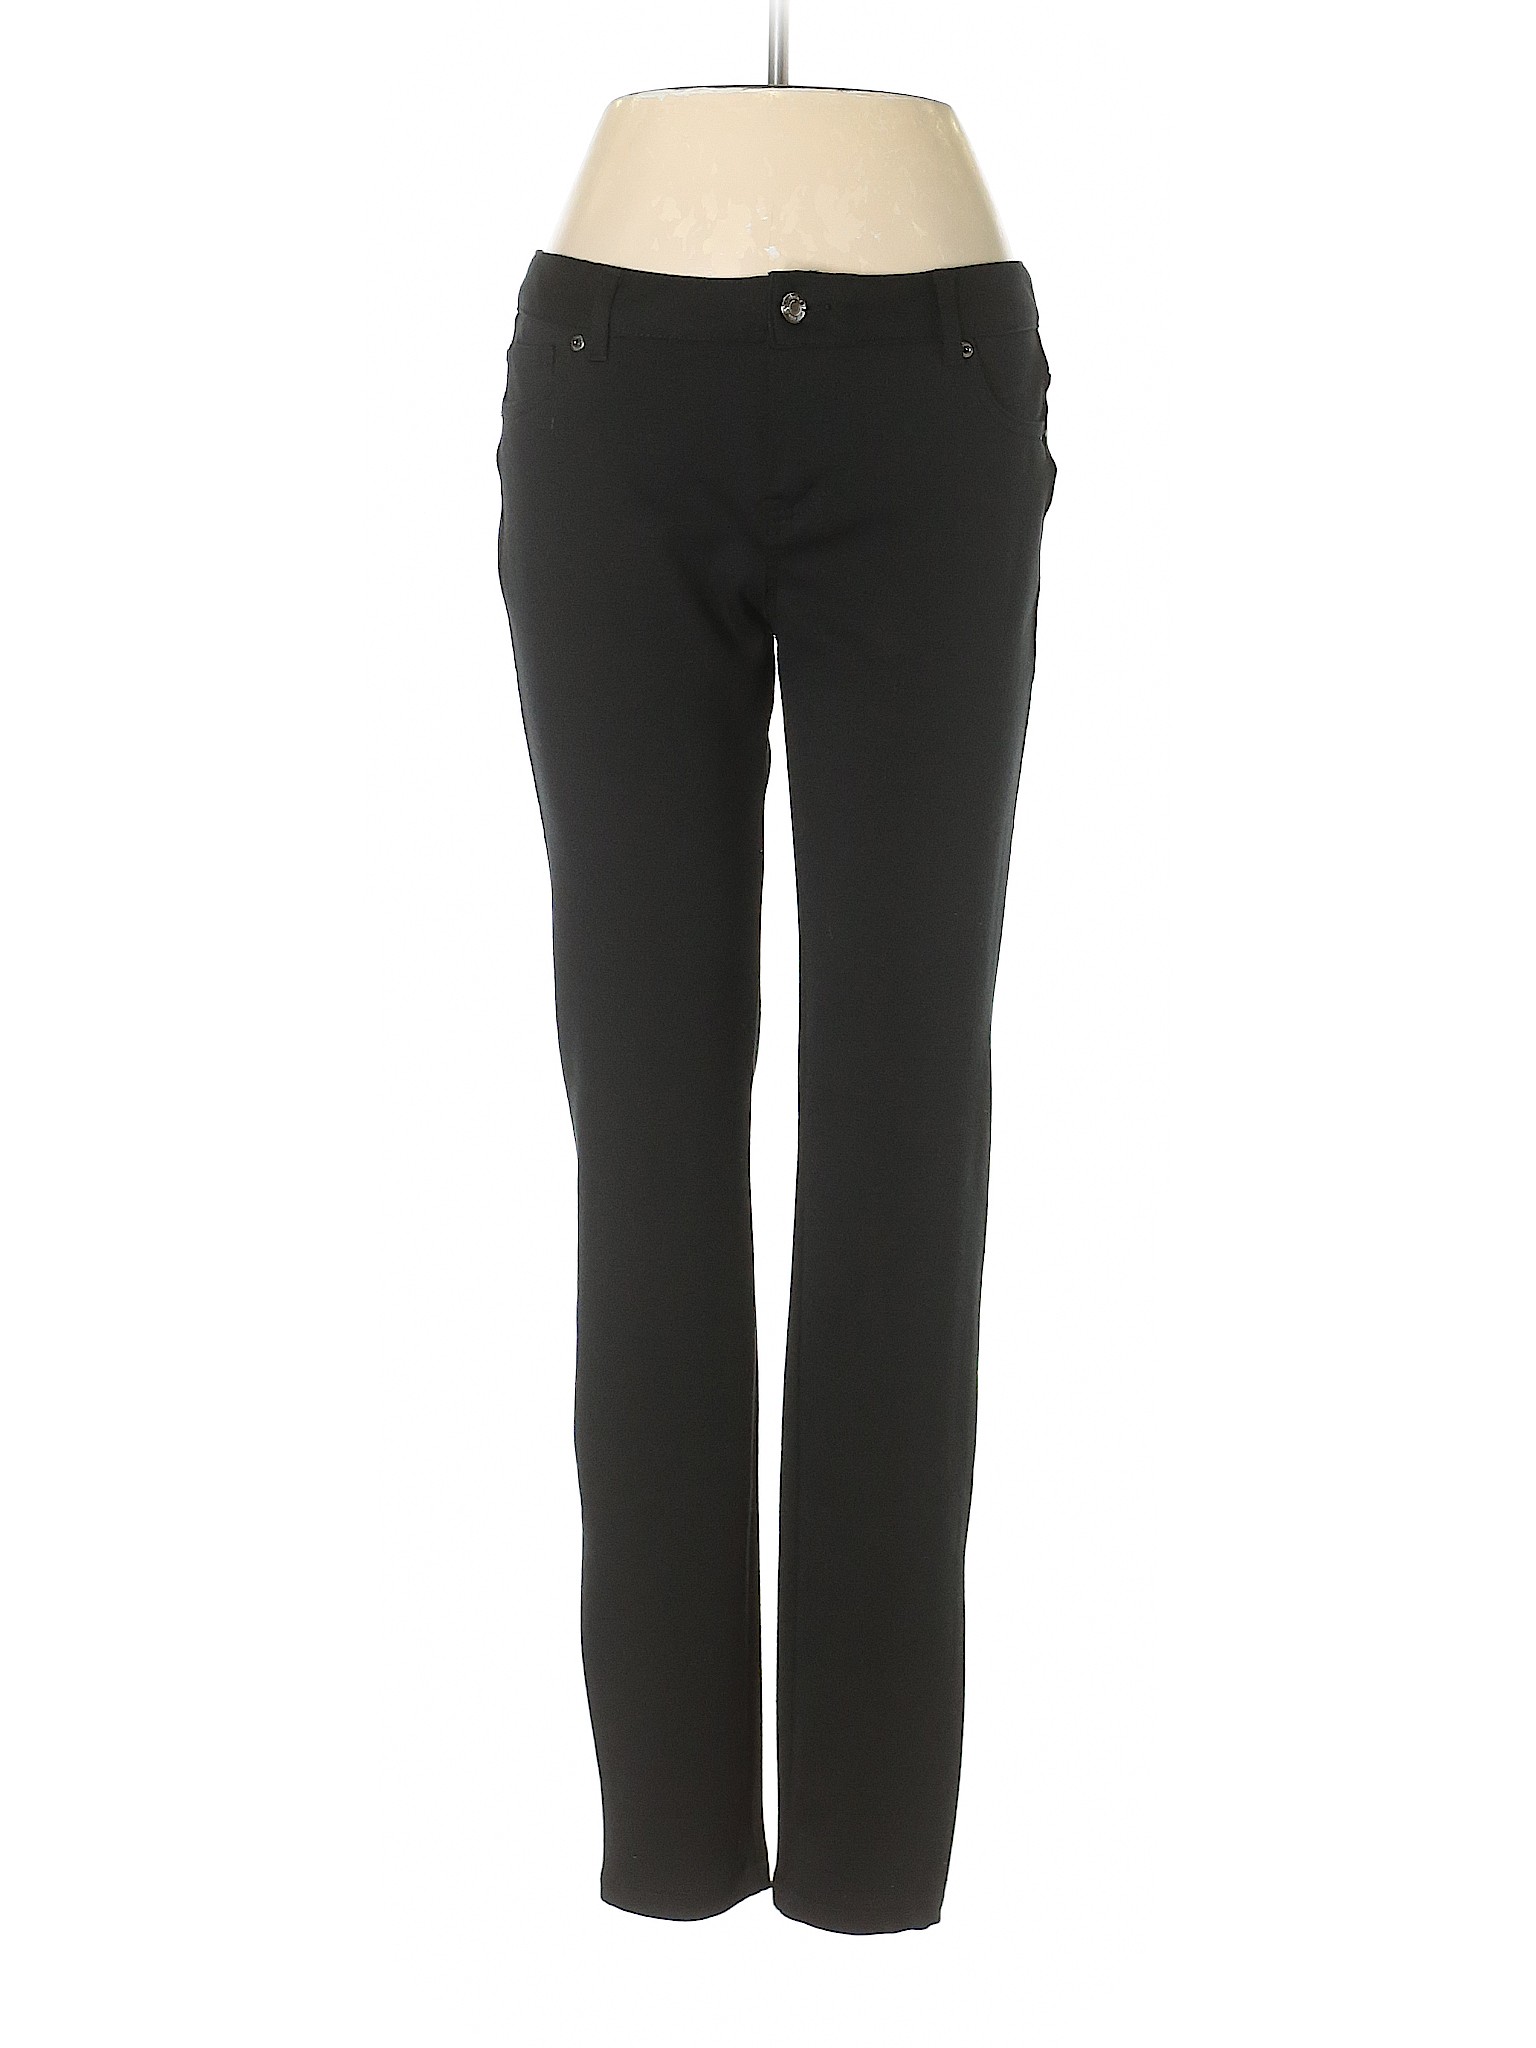 Soho JEANS NEW YORK & COMPANY Women Black Jeans 4 | eBay